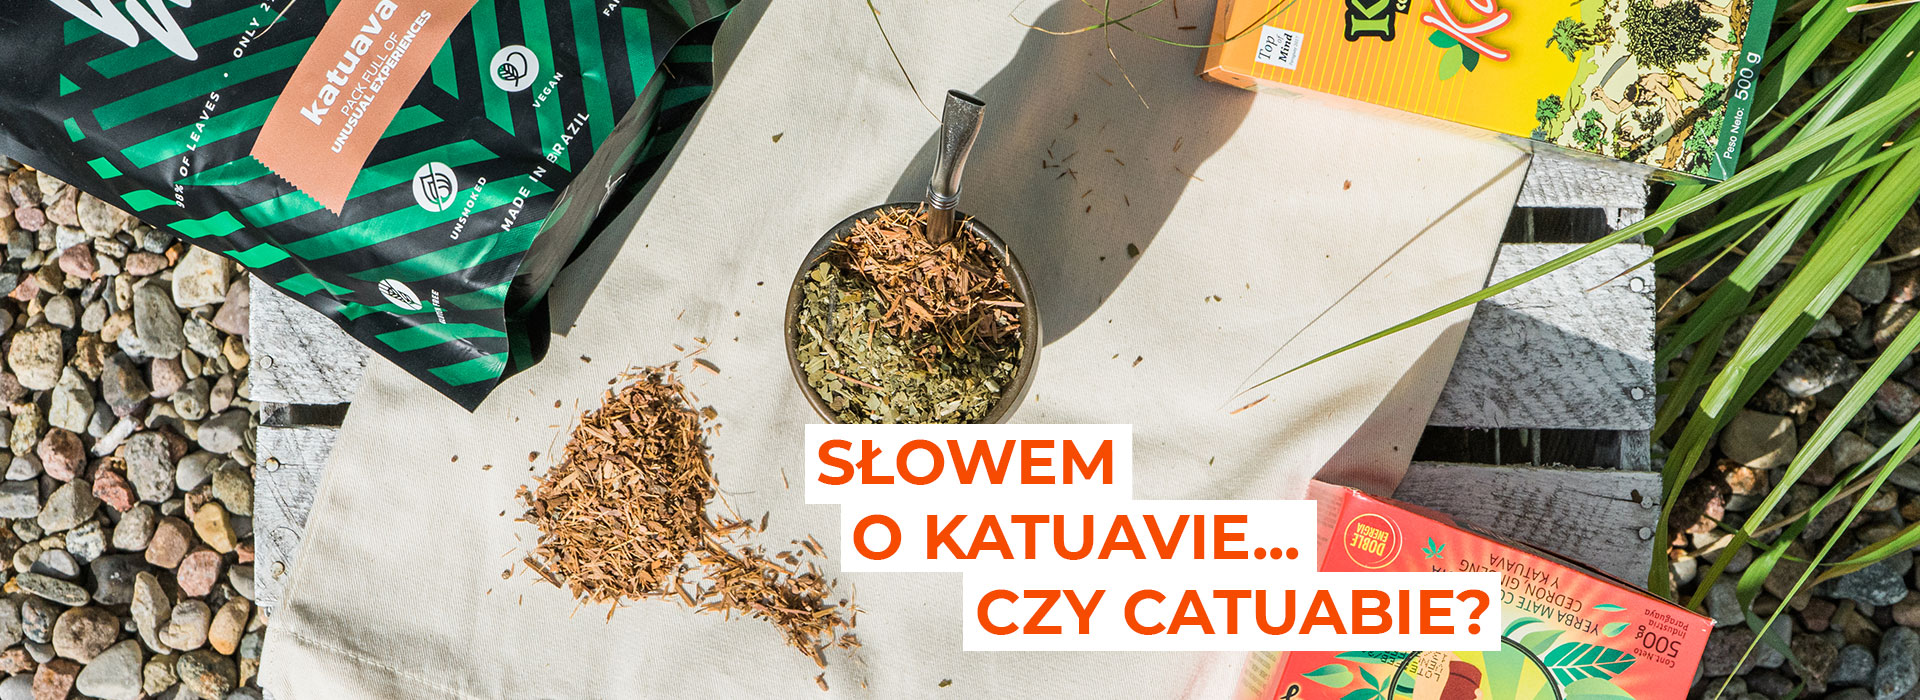    
  
  
  
  
  
  
  
  
   | ZielonyTarg.pl